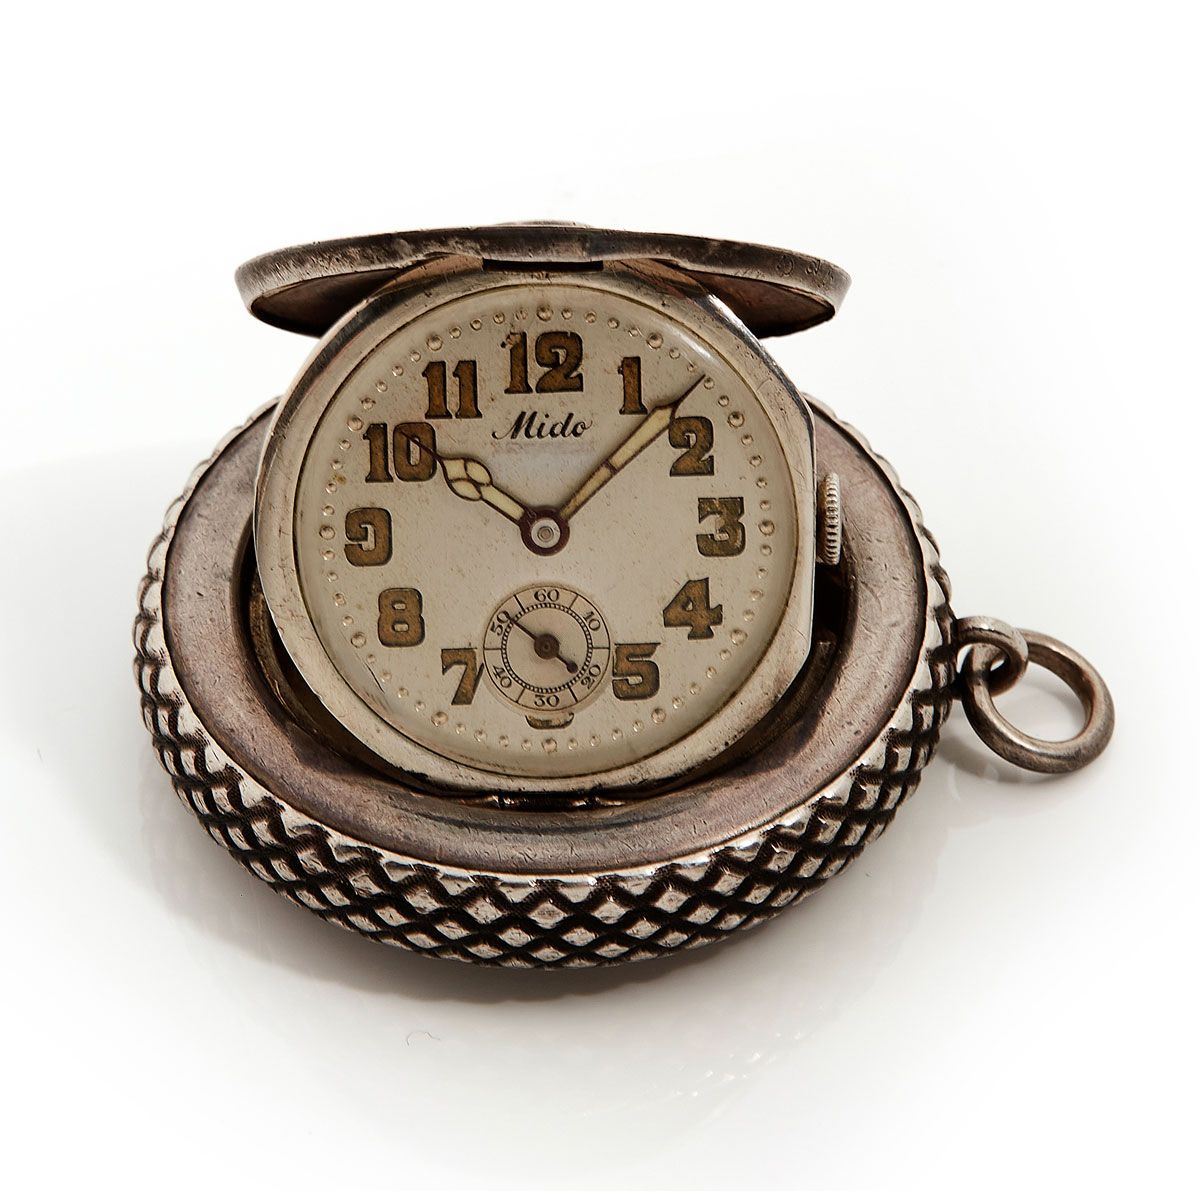 Null Mido, "la montre roue", nº 285323, hacia 1930 Estuche de Huguenin


Rarísim&hellip;